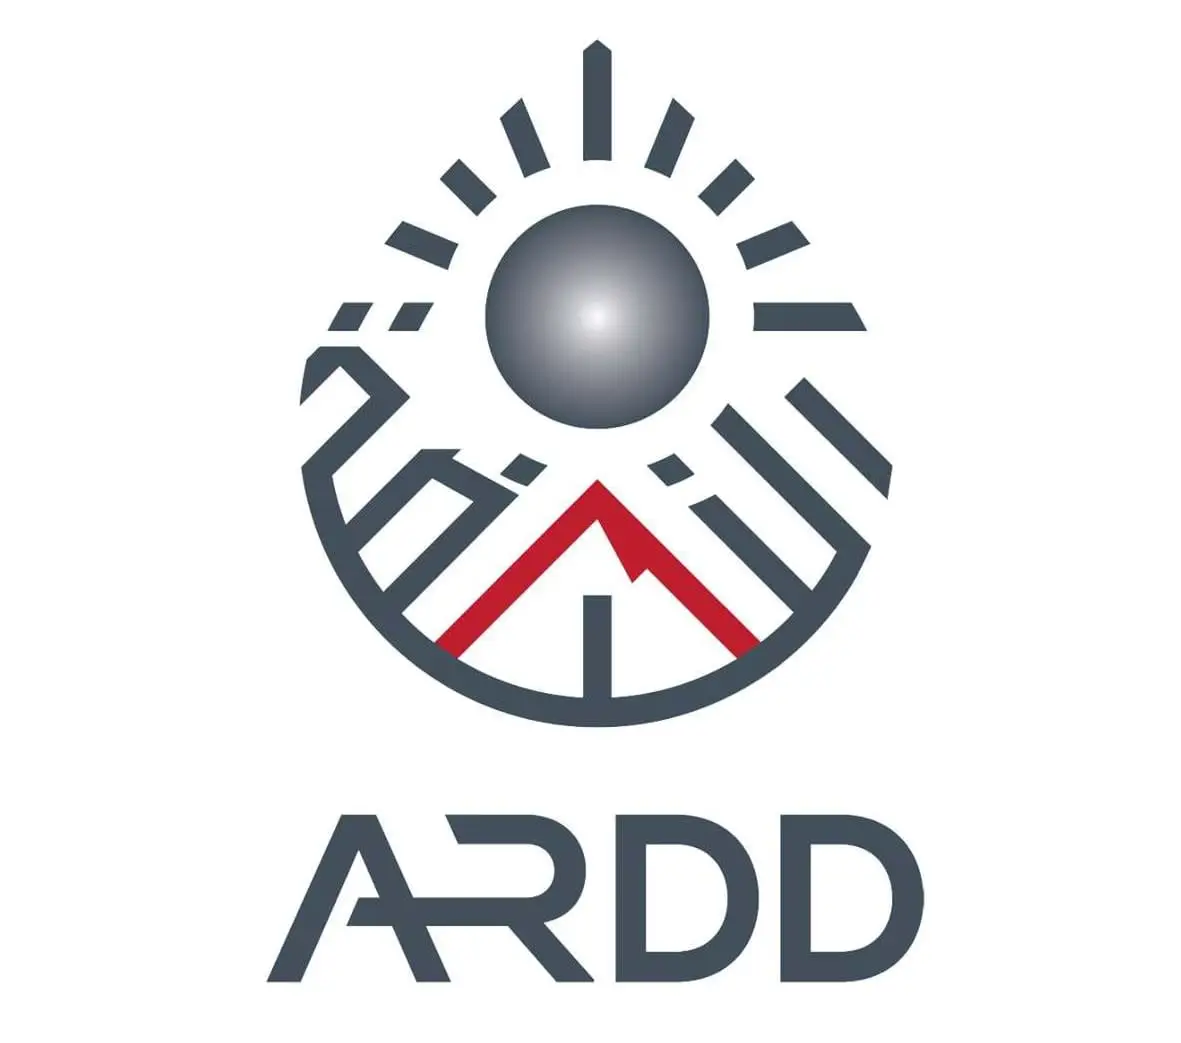 ARDD logo